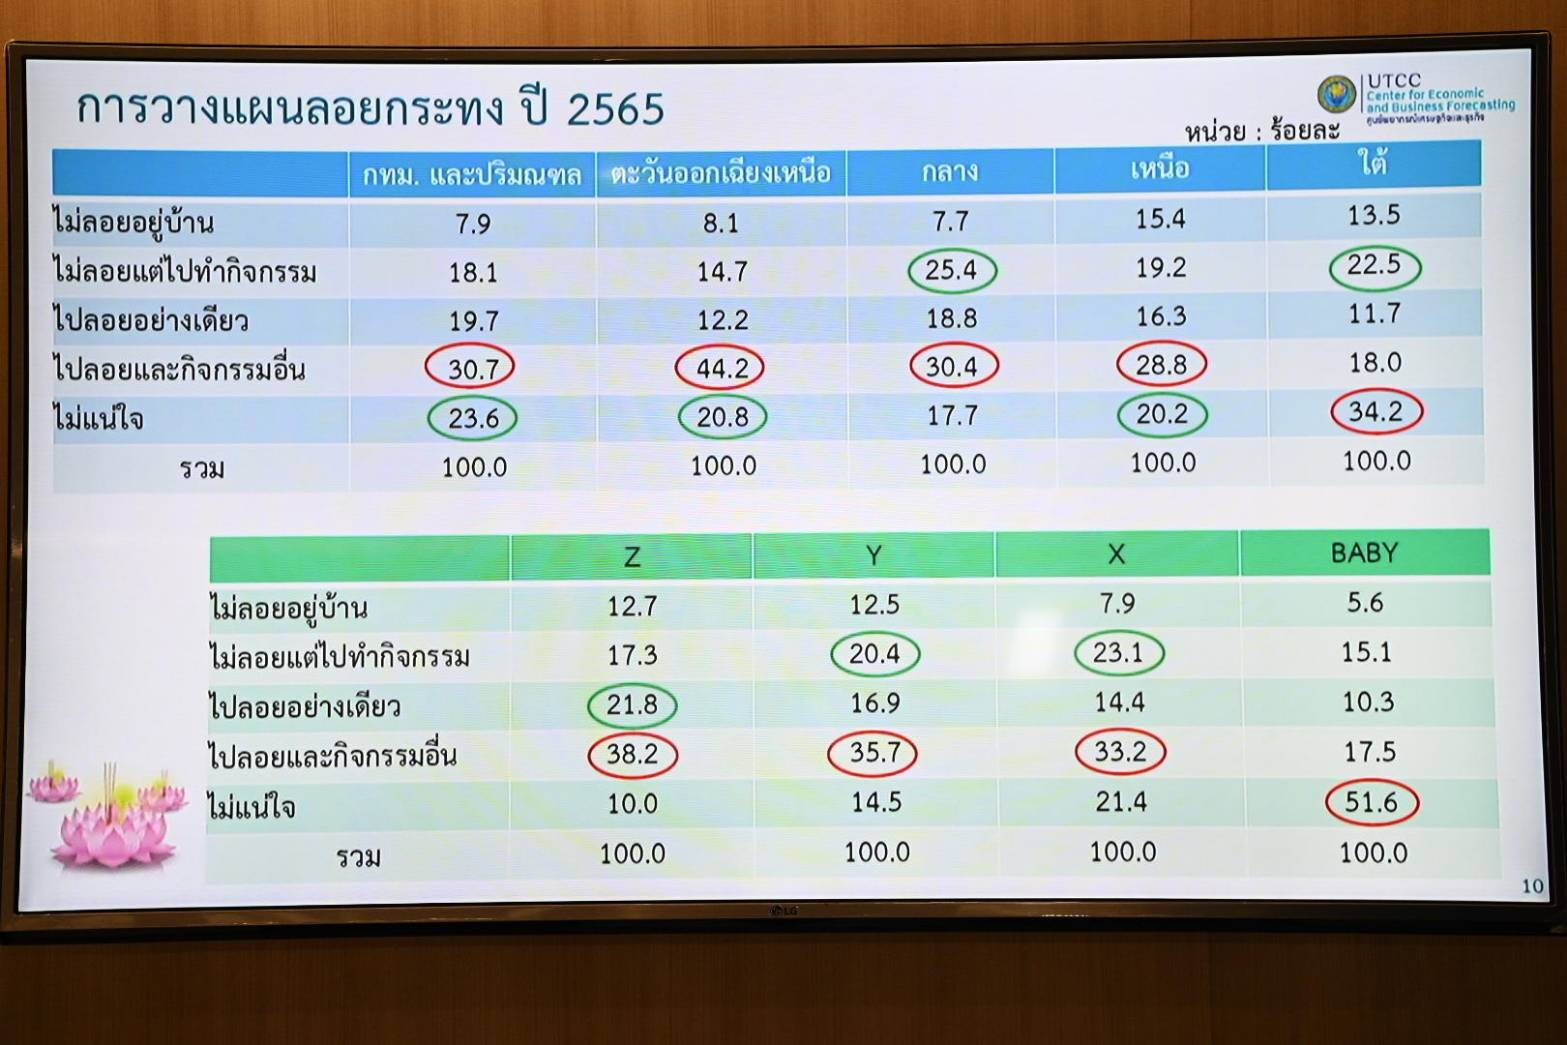 ศูนย์พยากรณ์เศรษฐกิจและธุรกิจ ม.หอการค้าไทย แถลงข่าวผลสำรวจการใช้จ่ายเทศกาลลอยกระทง ประจำปี 2565